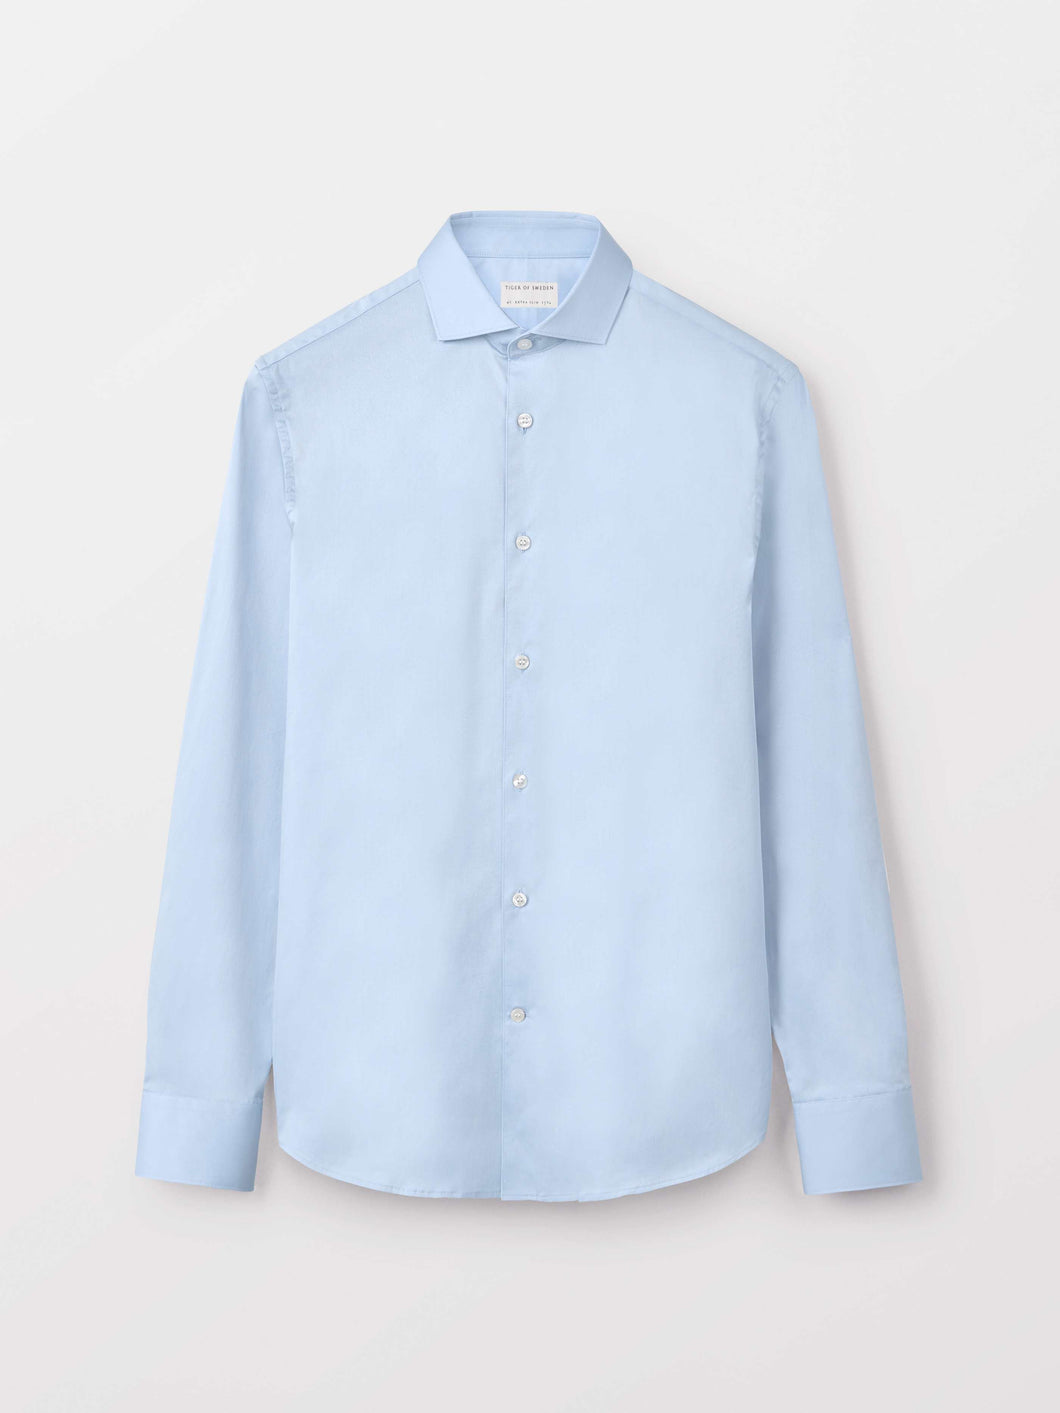 TIGER OF SWEDEN Farrell 5 Shirt Light Blue